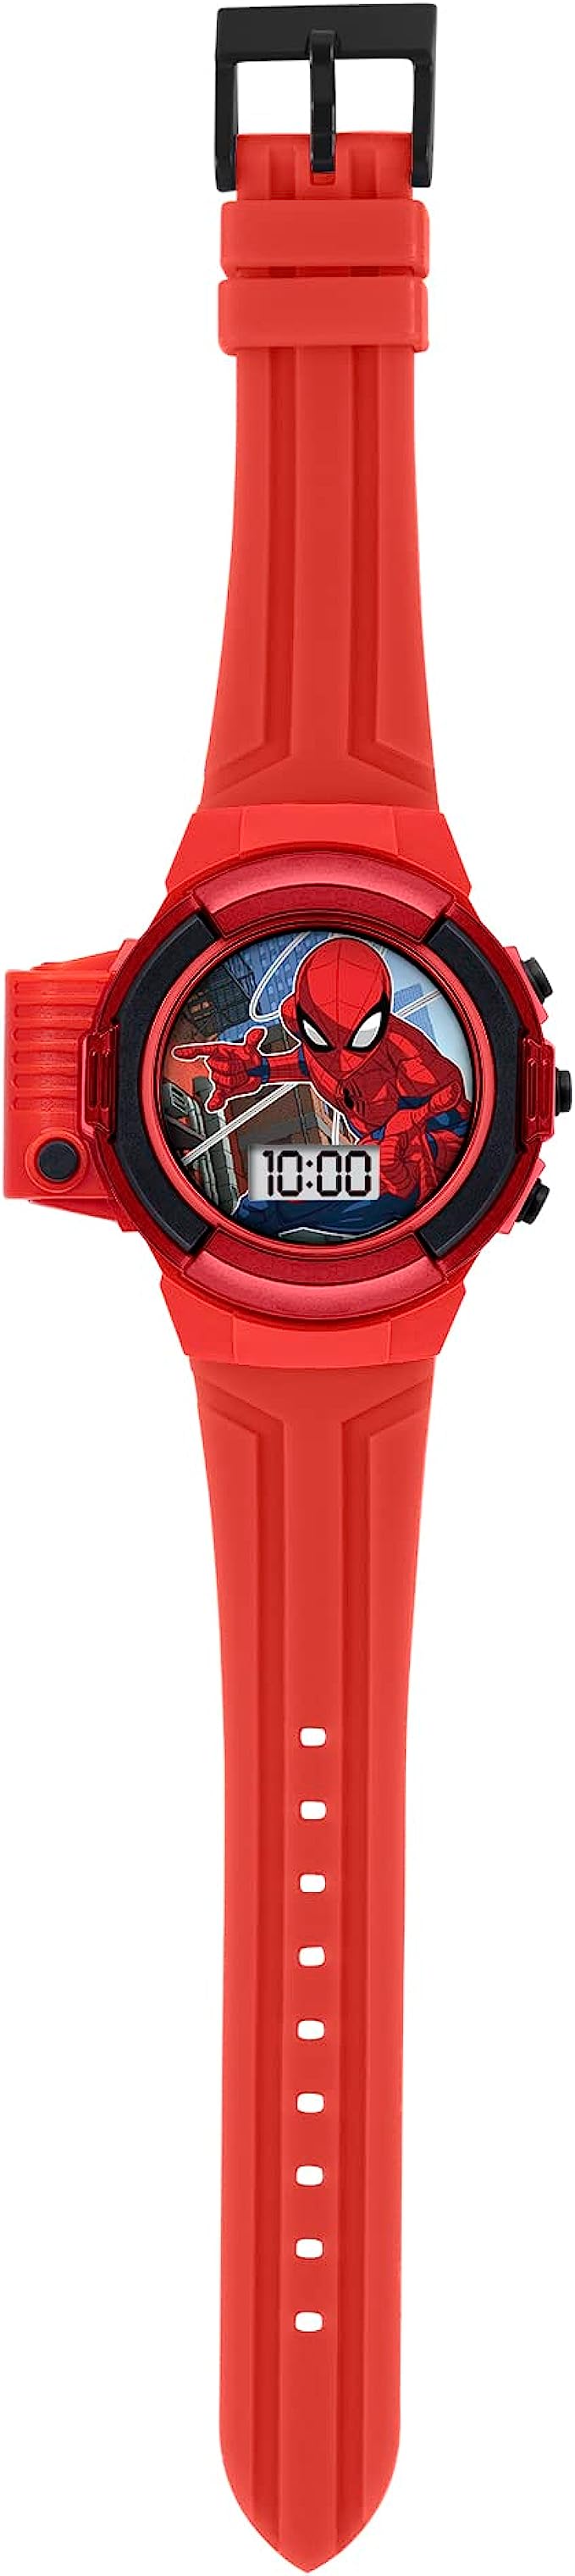 Spiderman Flashlight Watch